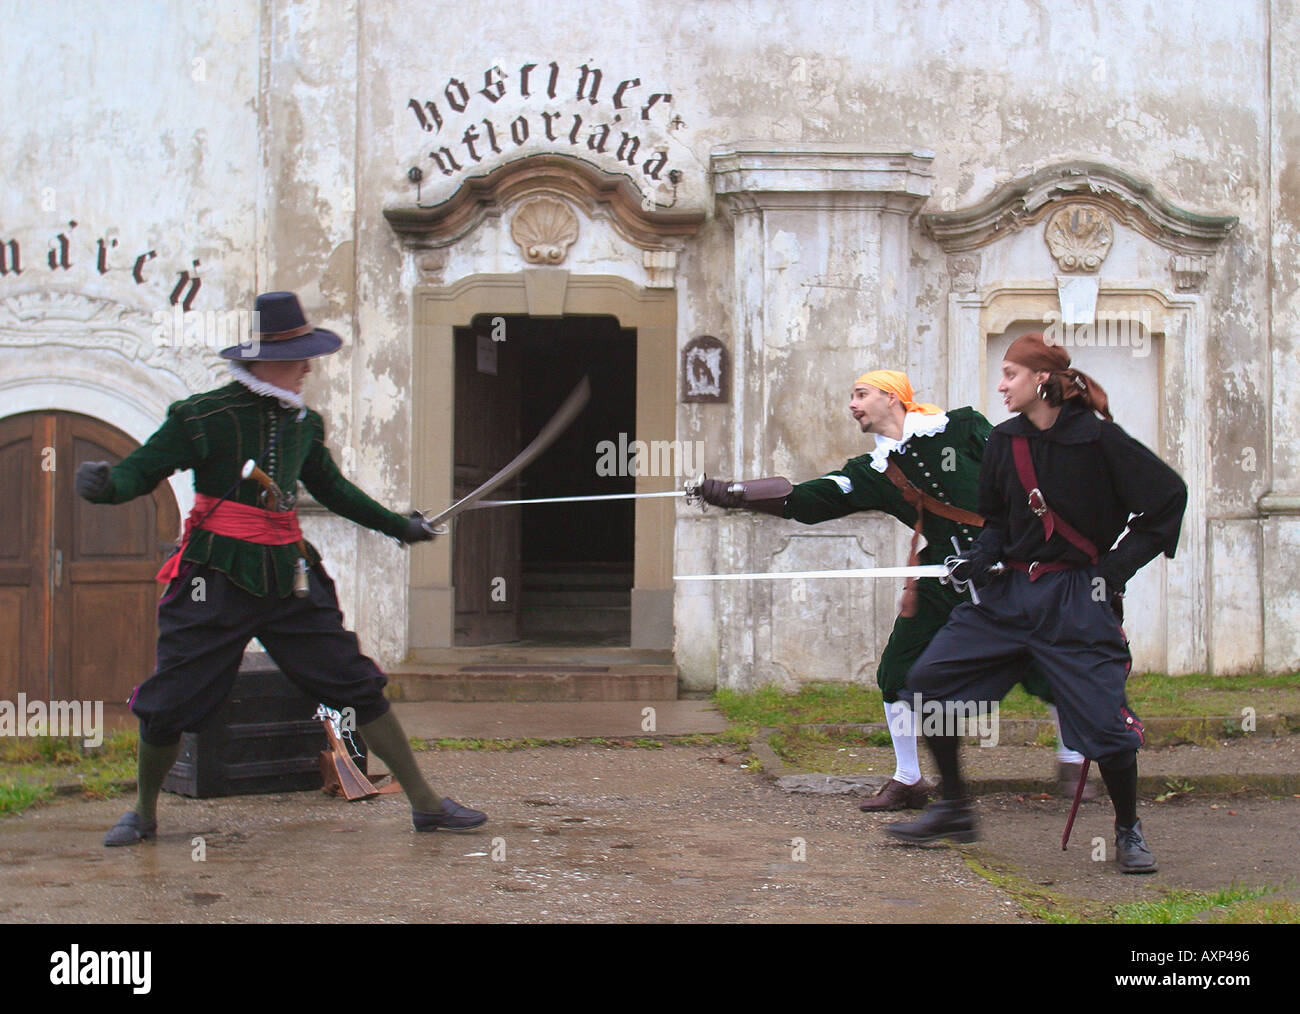 Un spectacle du 17ème siècle s'exprime dans la Slovaquie Budimir Banque D'Images